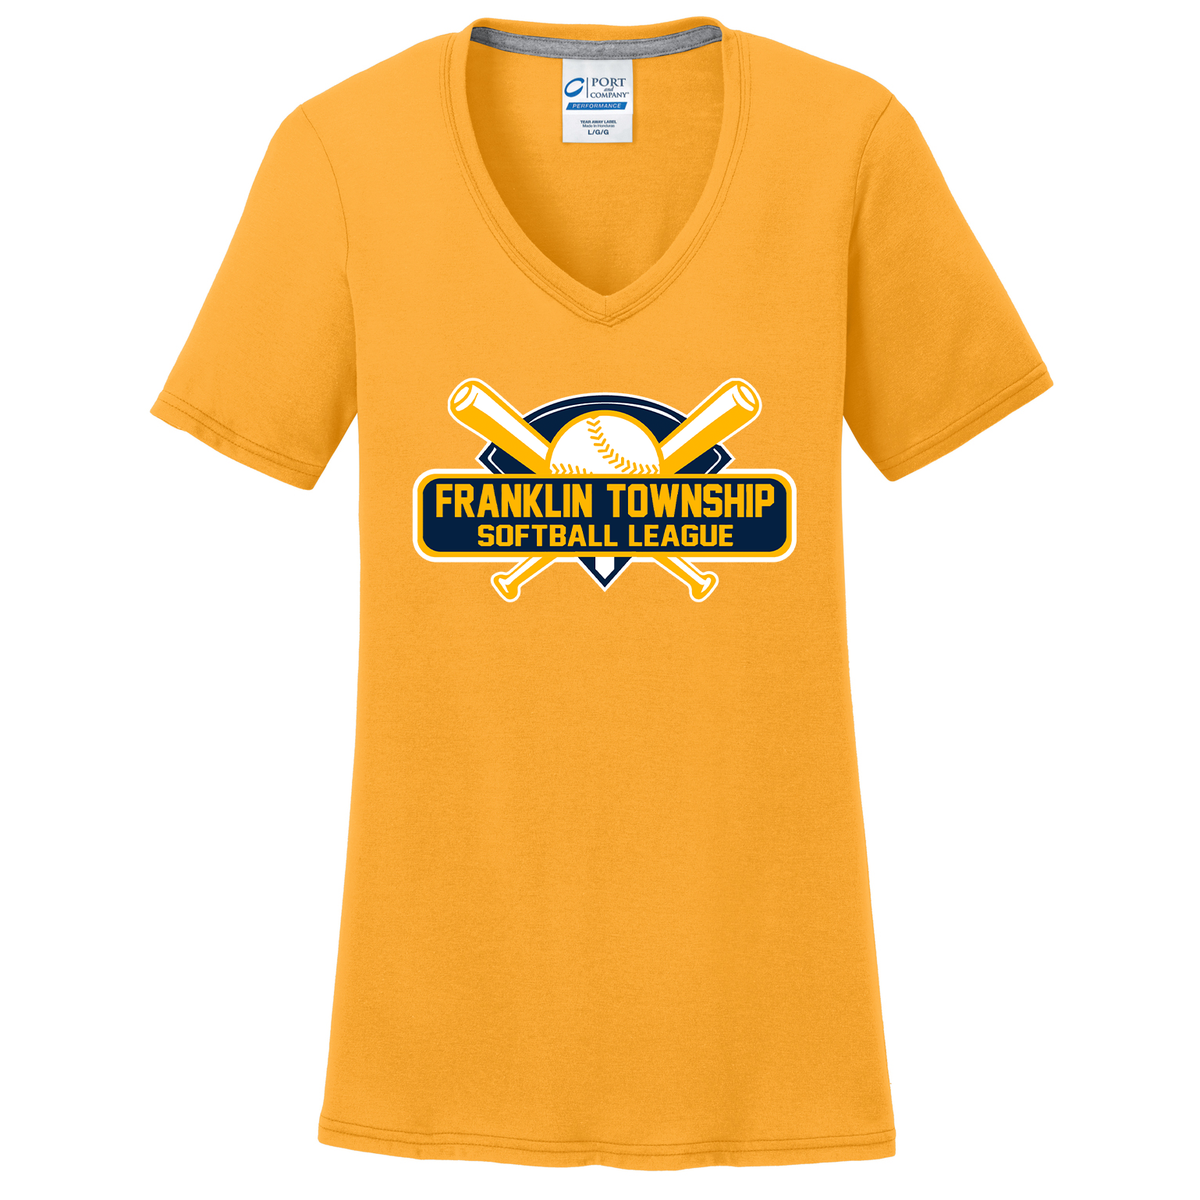 Franklin Township Softball League Women's T-Shirt